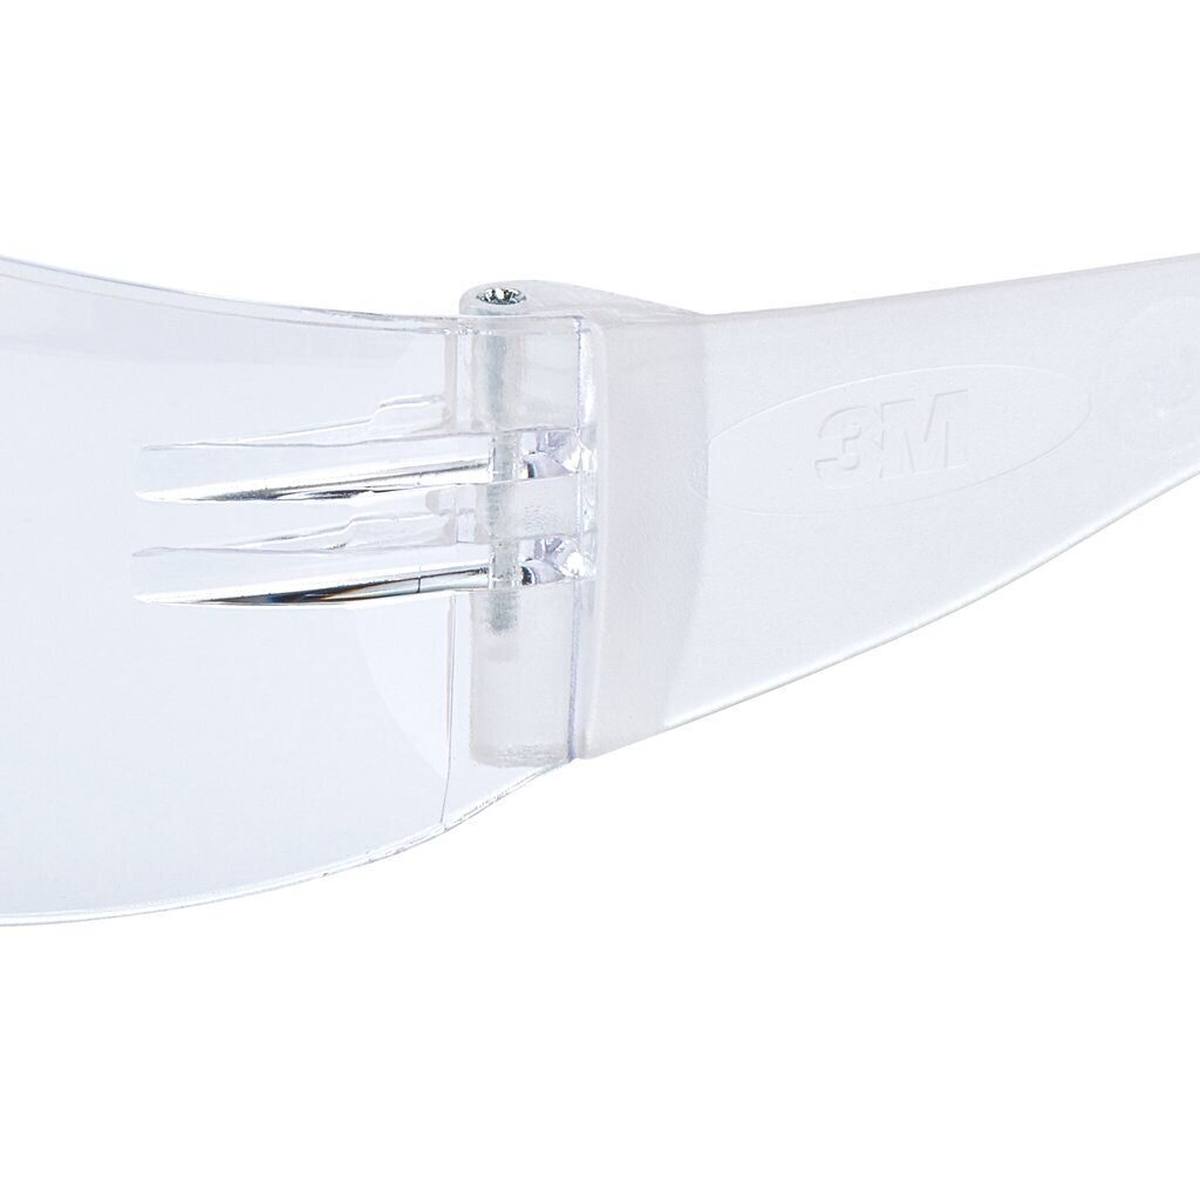 3M Gafas de protección Virtua Slim / Kids Fit con tratamiento antirrayas/antivaho, lentes transparentes, 71500-00008